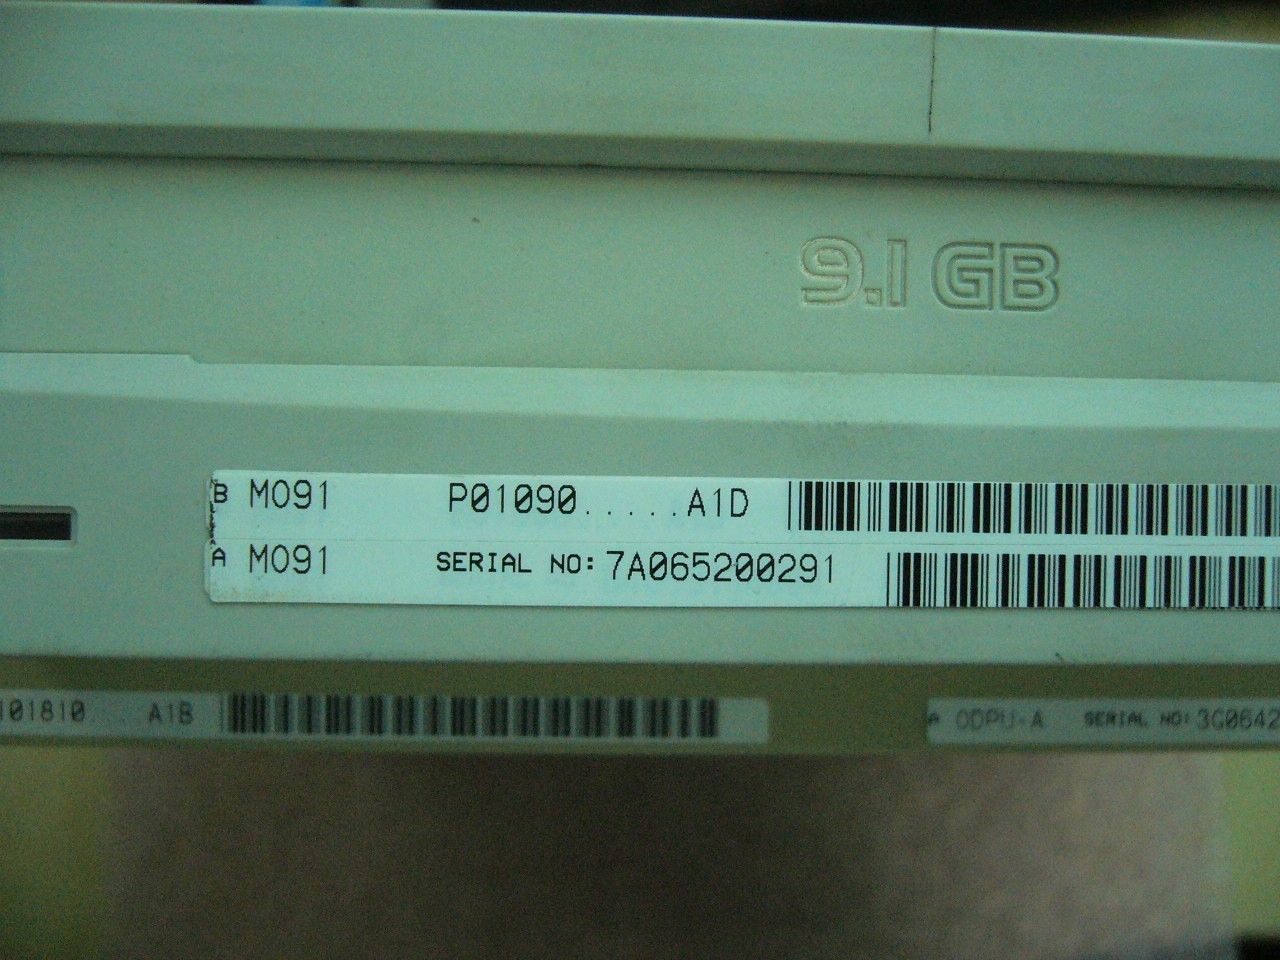 QTY 1x Nokia 9.1GB MO Drive ODPU-A C101810.A1B Sony SMO-F561 Tested - zum Schließen ins Bild klicken